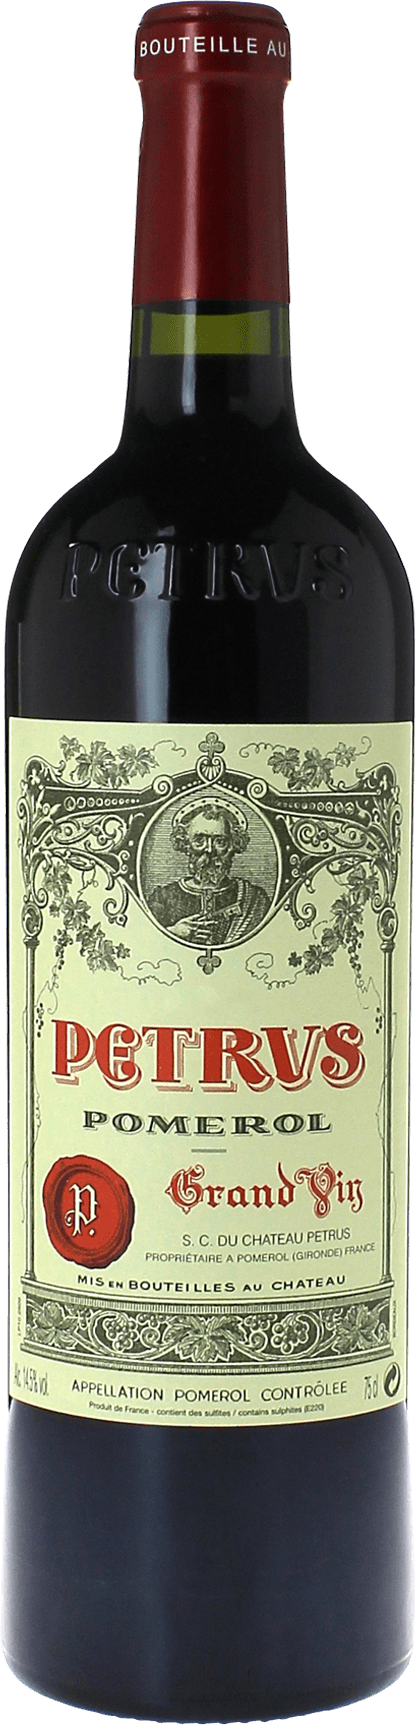 Petrus 2004  Pomerol, Bordeaux rouge